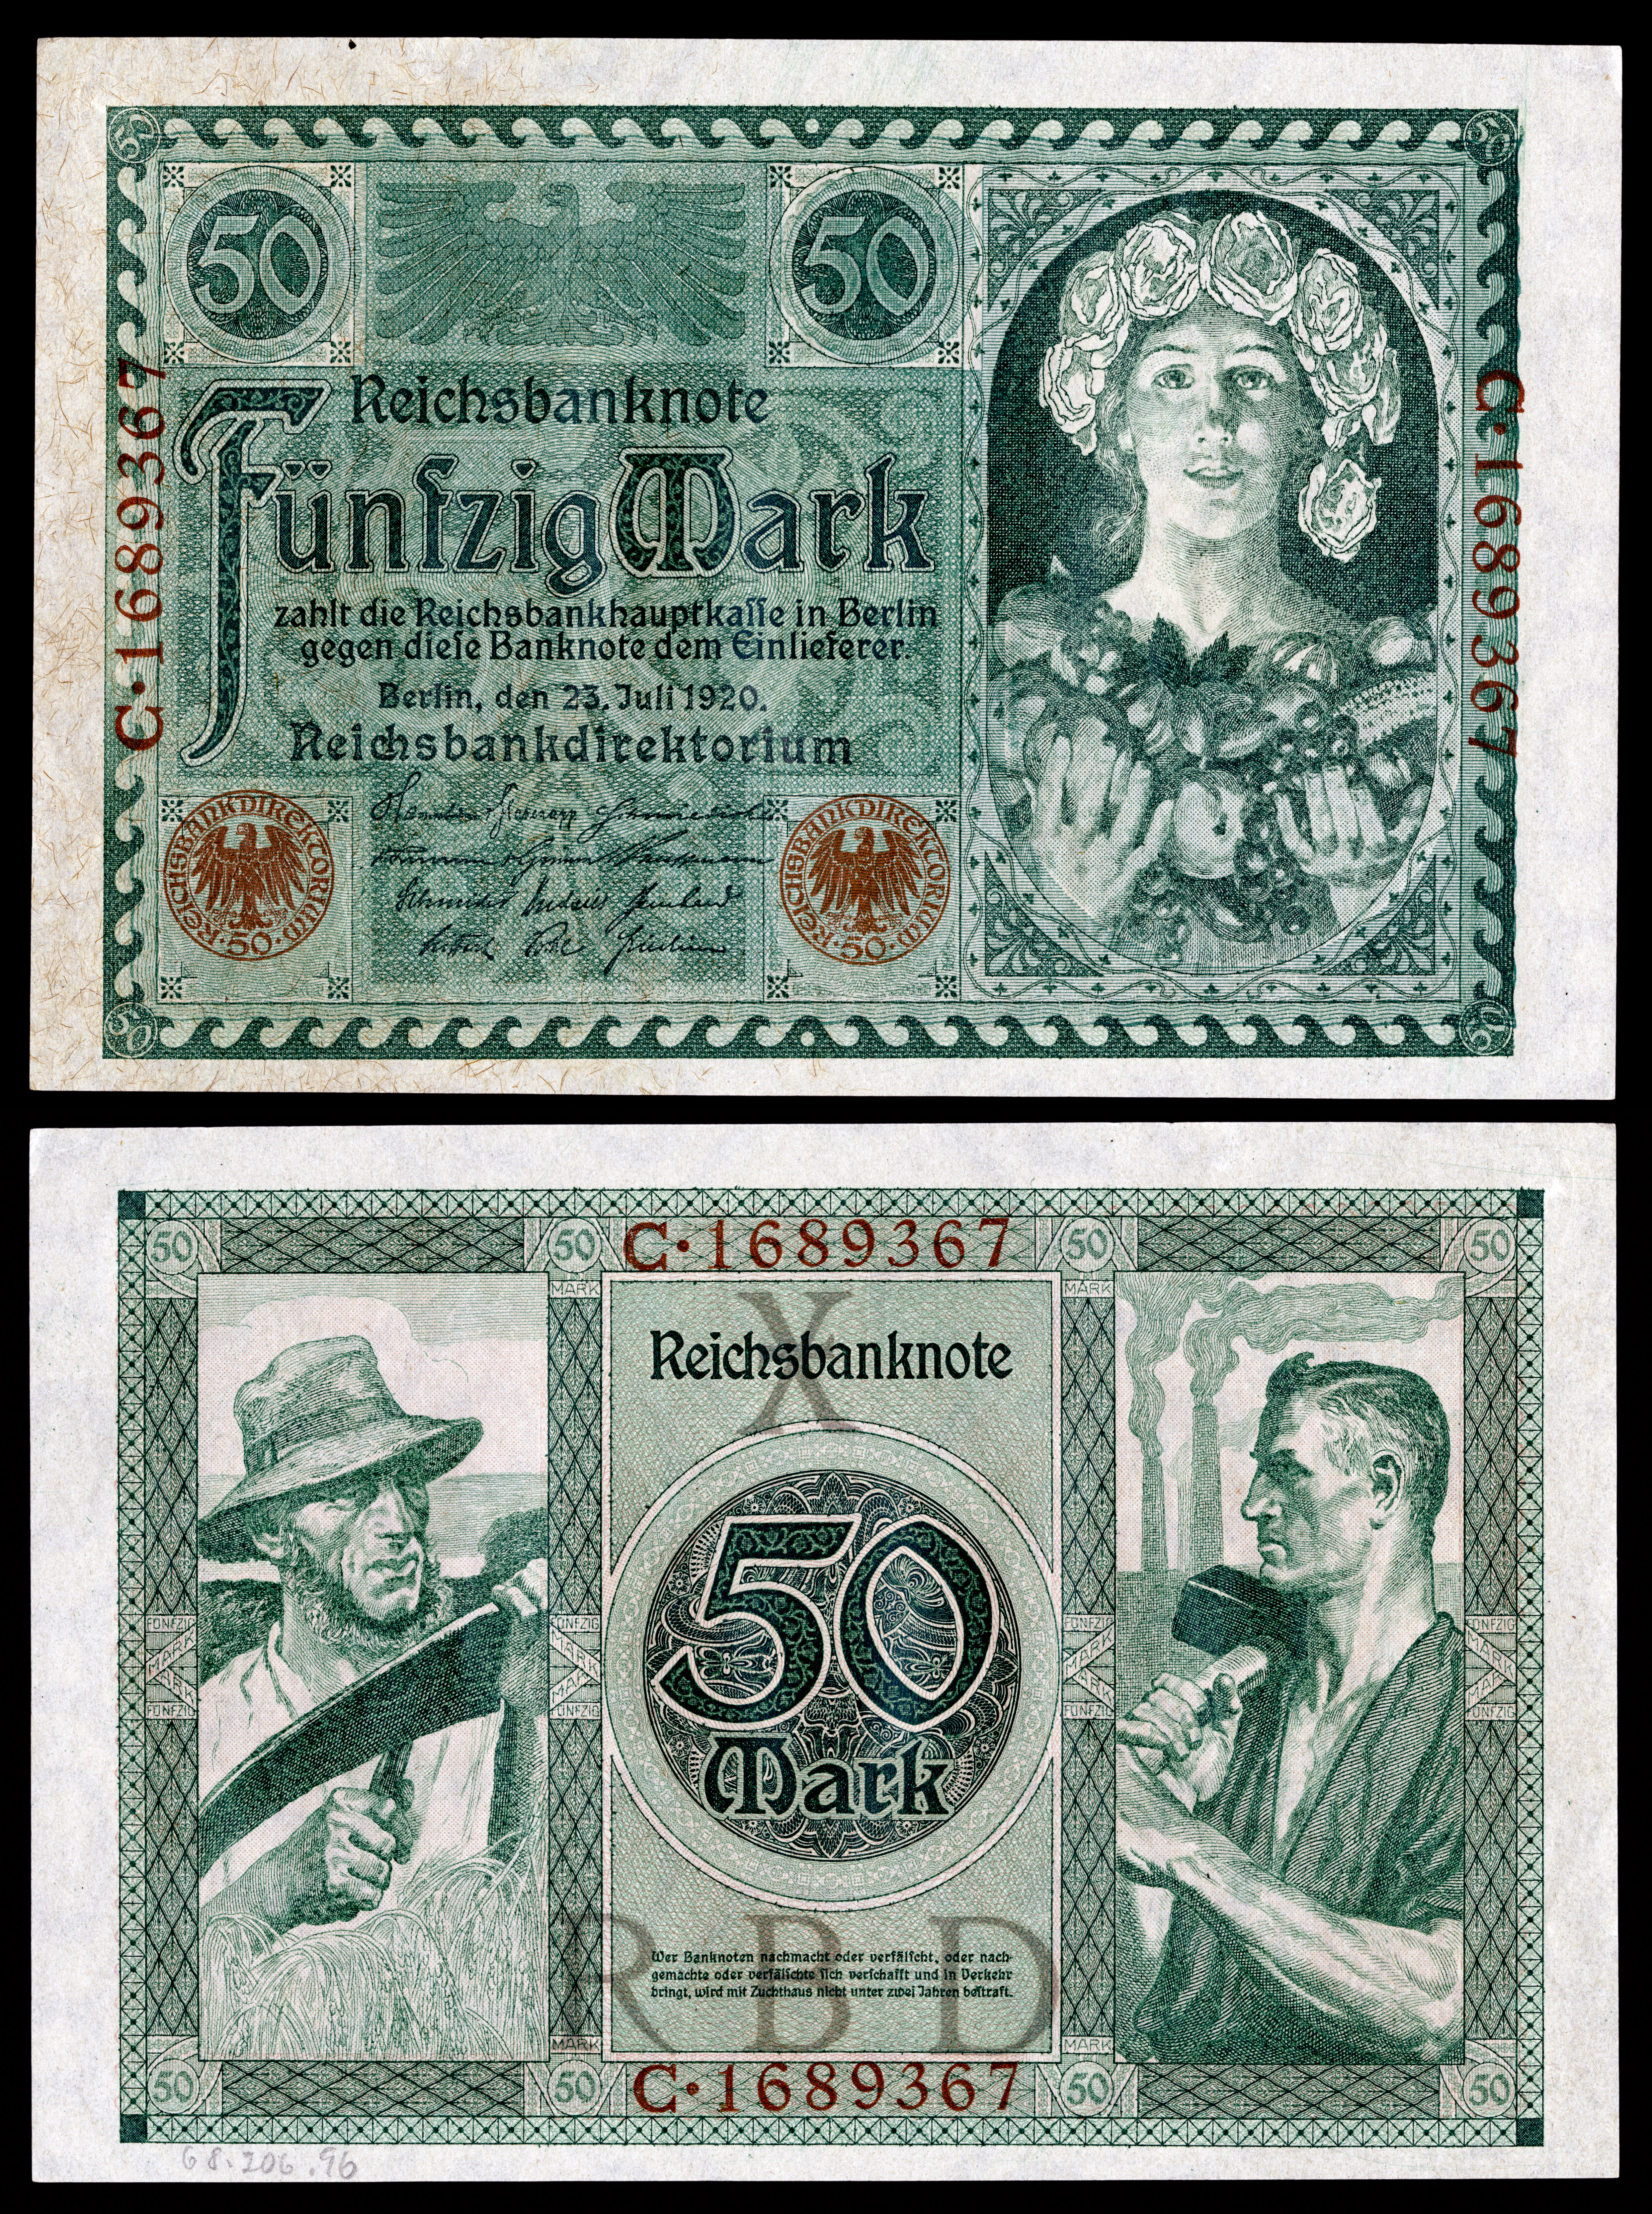 File:GER-68-Reichsbanknote-50 Mark (1920).jpg - Wikipedia